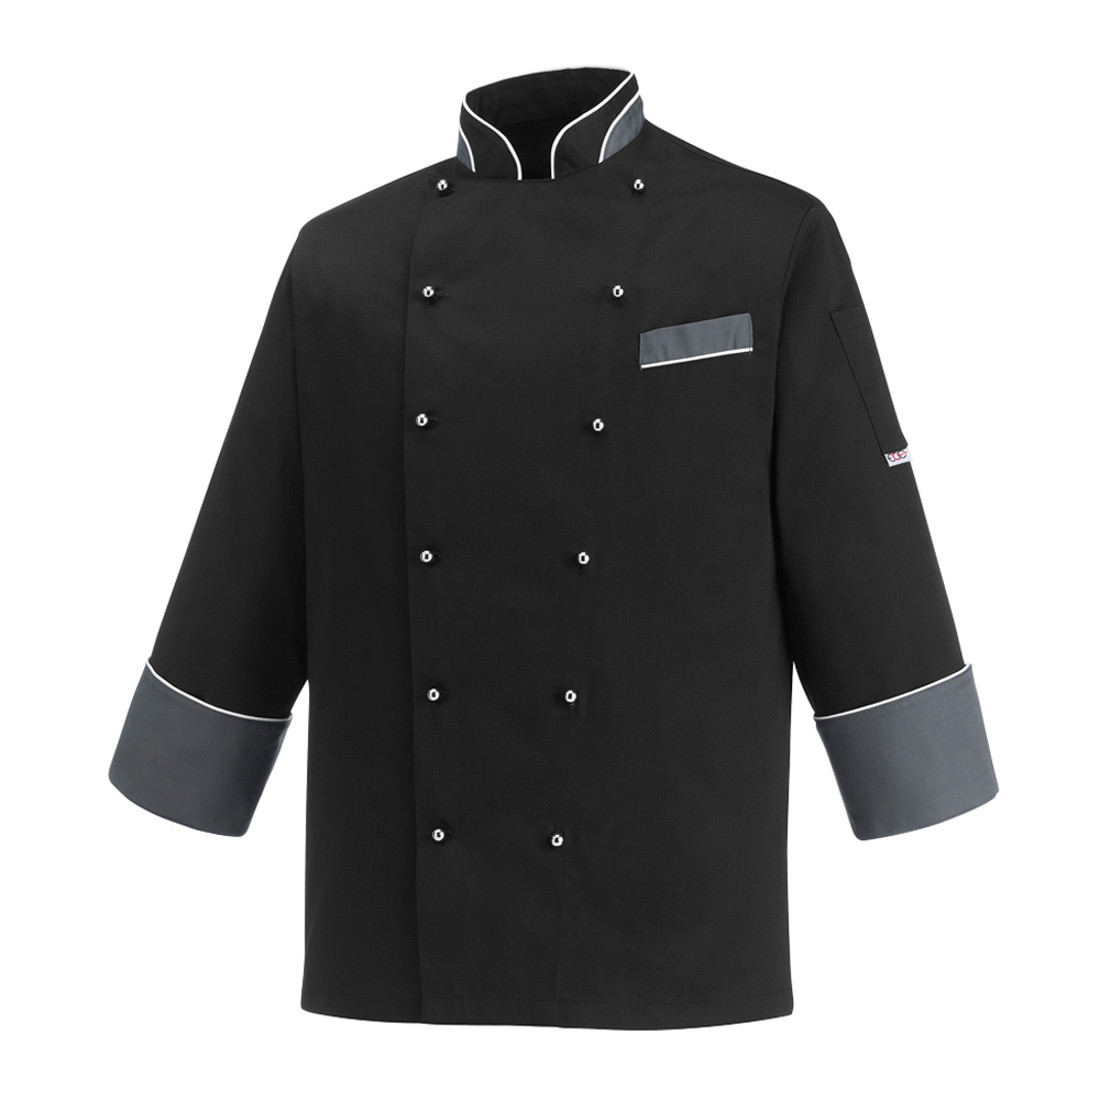 Heat Chef's Jacket - Safetywear